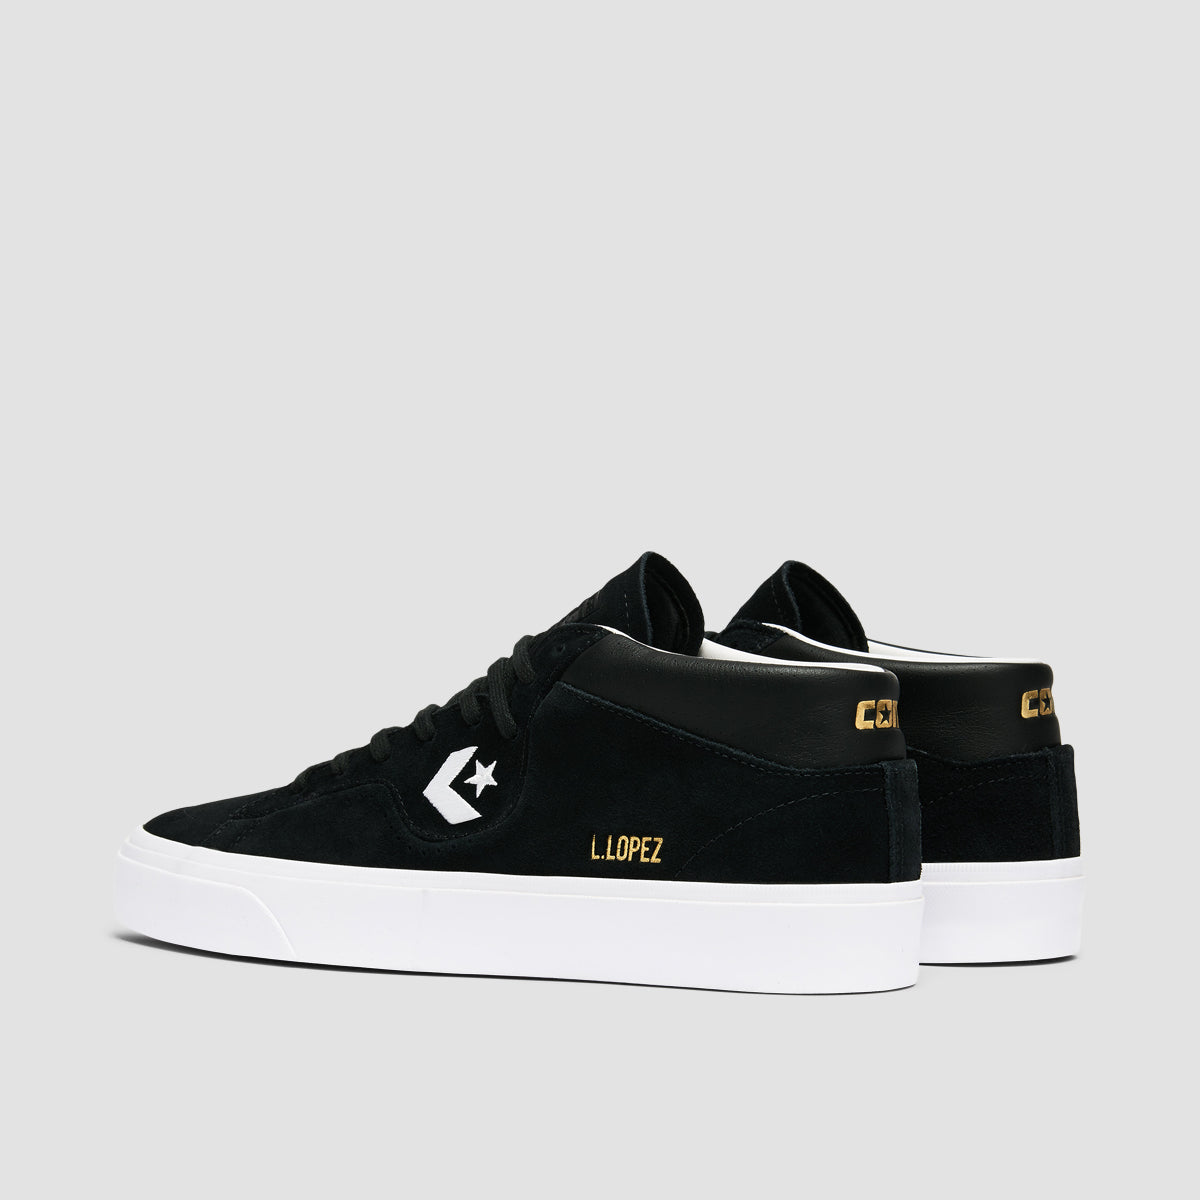 Converse Louie Lopez Pro Mid Top Shoes - Black/Black/White